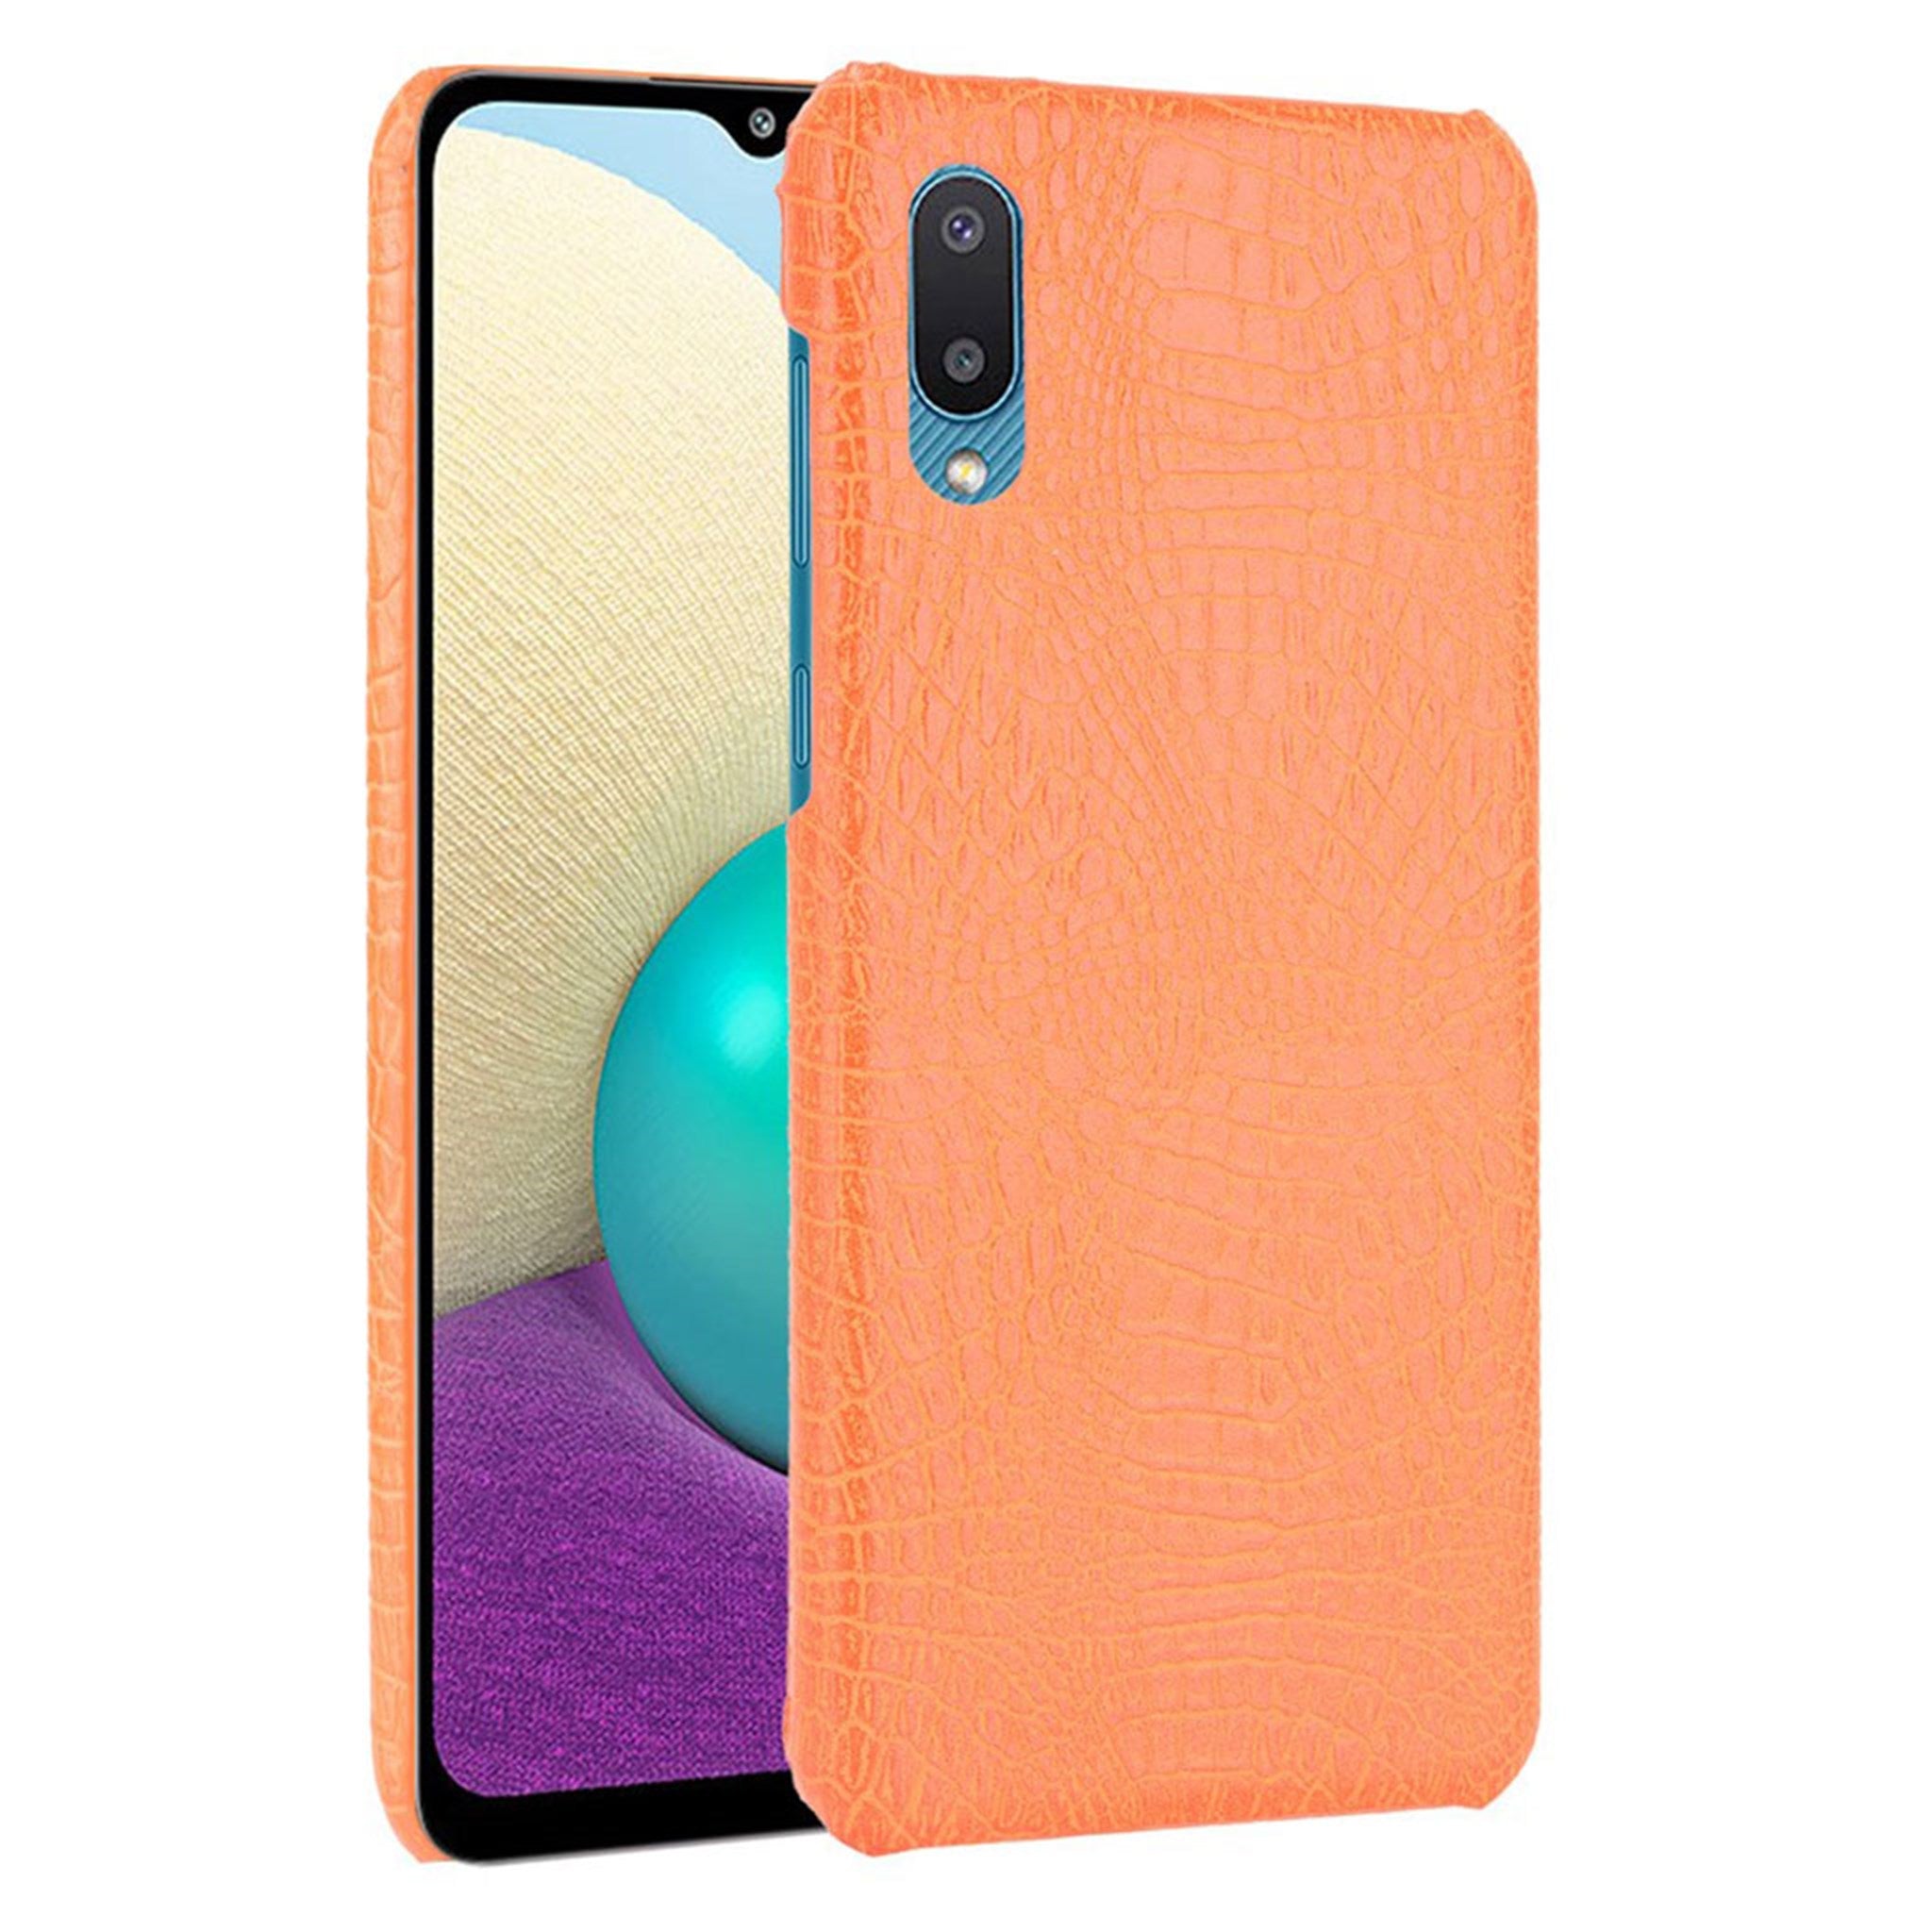 Croco case - Samsung Galaxy A02 - Orange